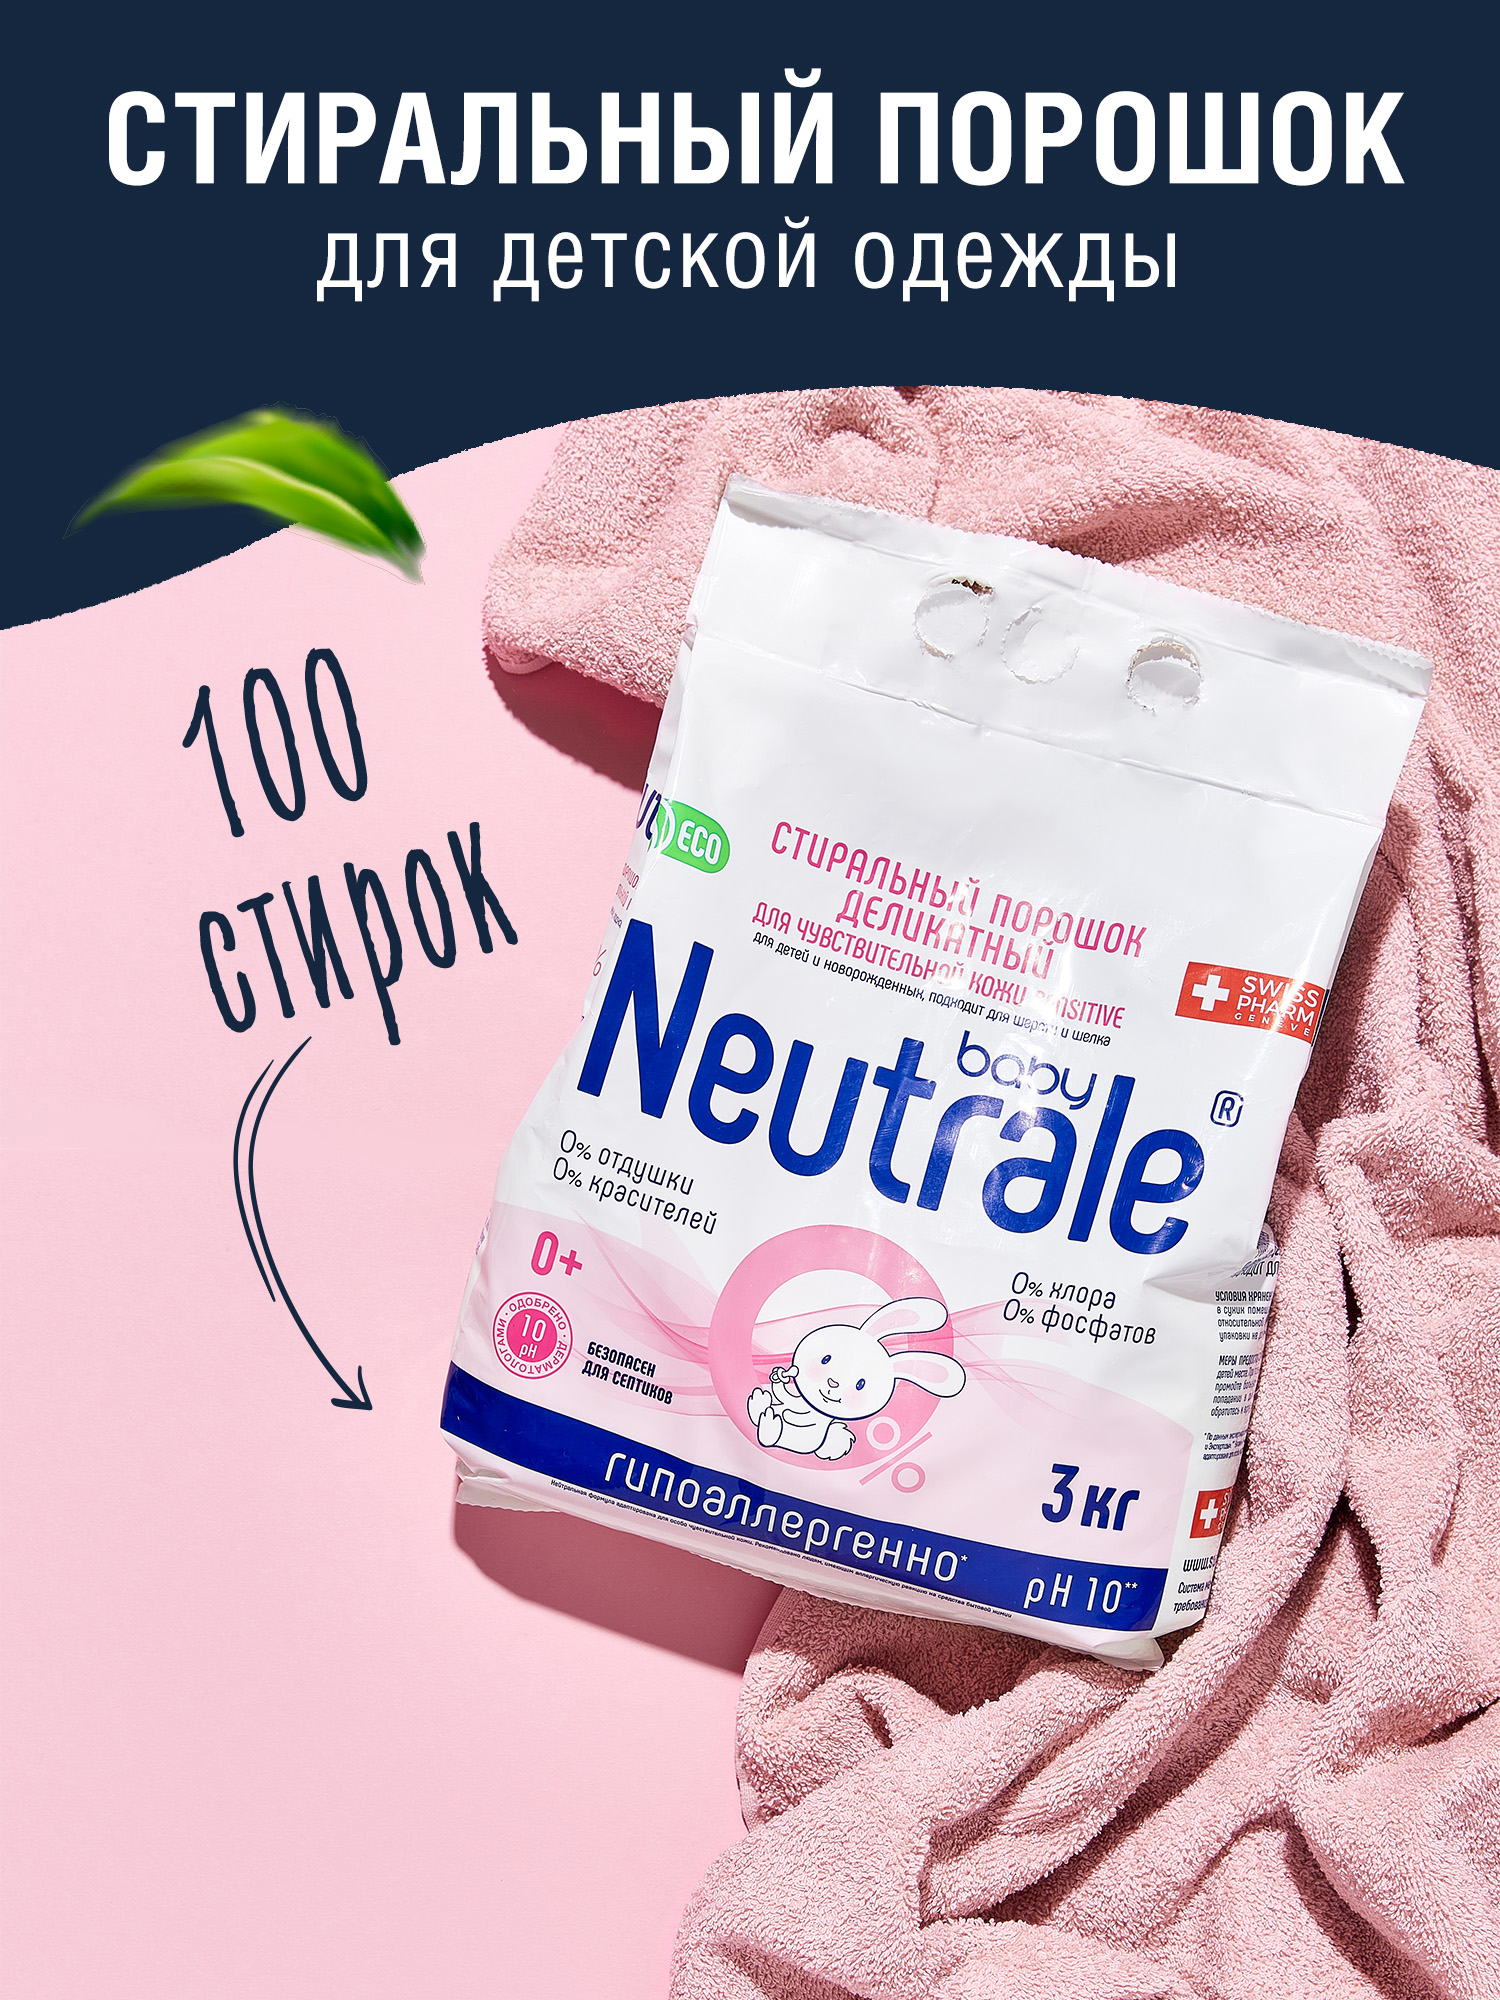 Стиральный порошок Neutrale для детской одежы без запаха и фосфатов ЭКО 3000г - фото 1